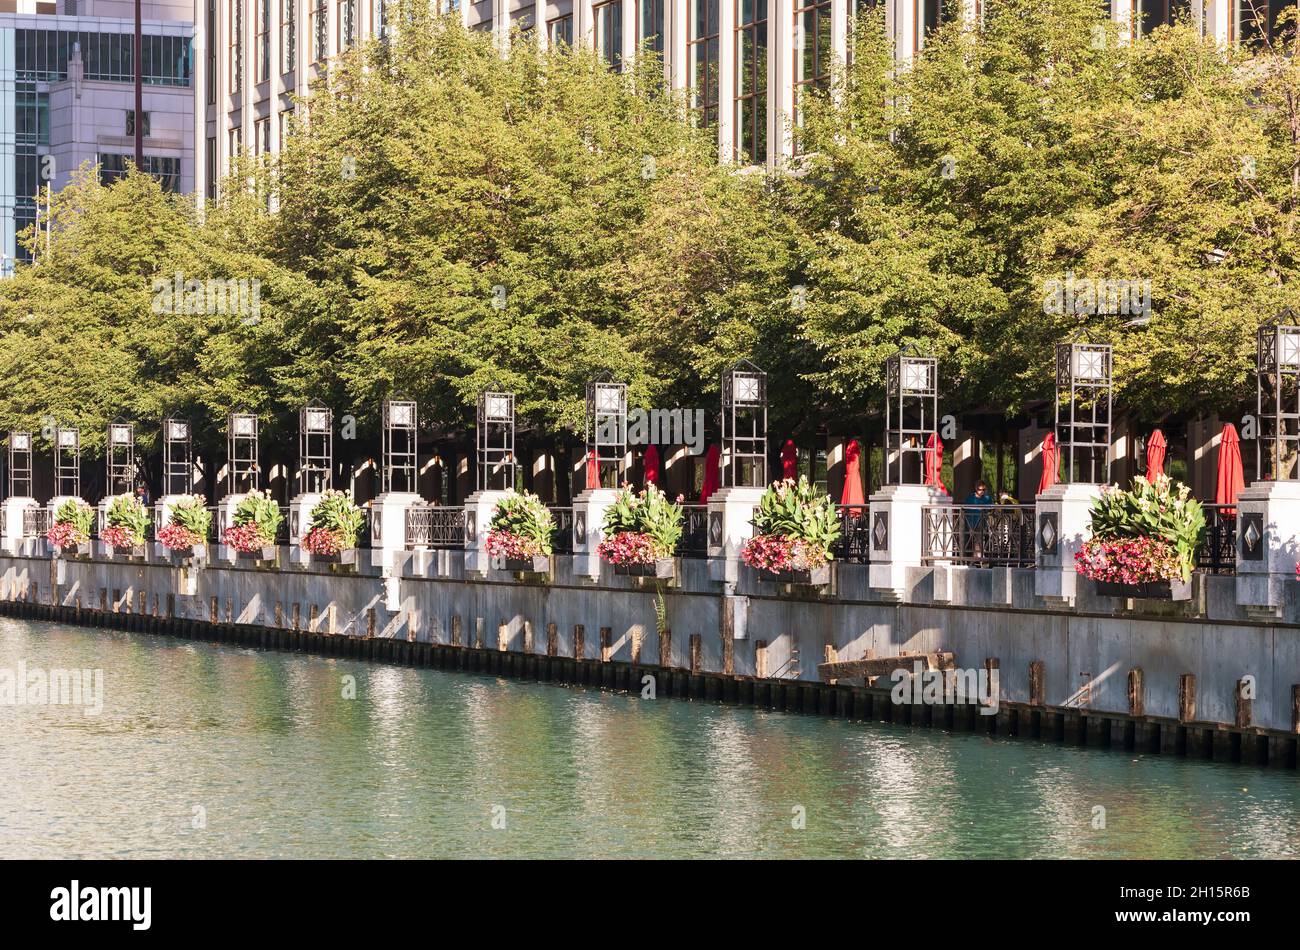 Ein Restaurant am Wasser am Chicago River. Pflanzgefäße mit bunten Blumen schmücken die Geländer am Flussufer. Stockfoto